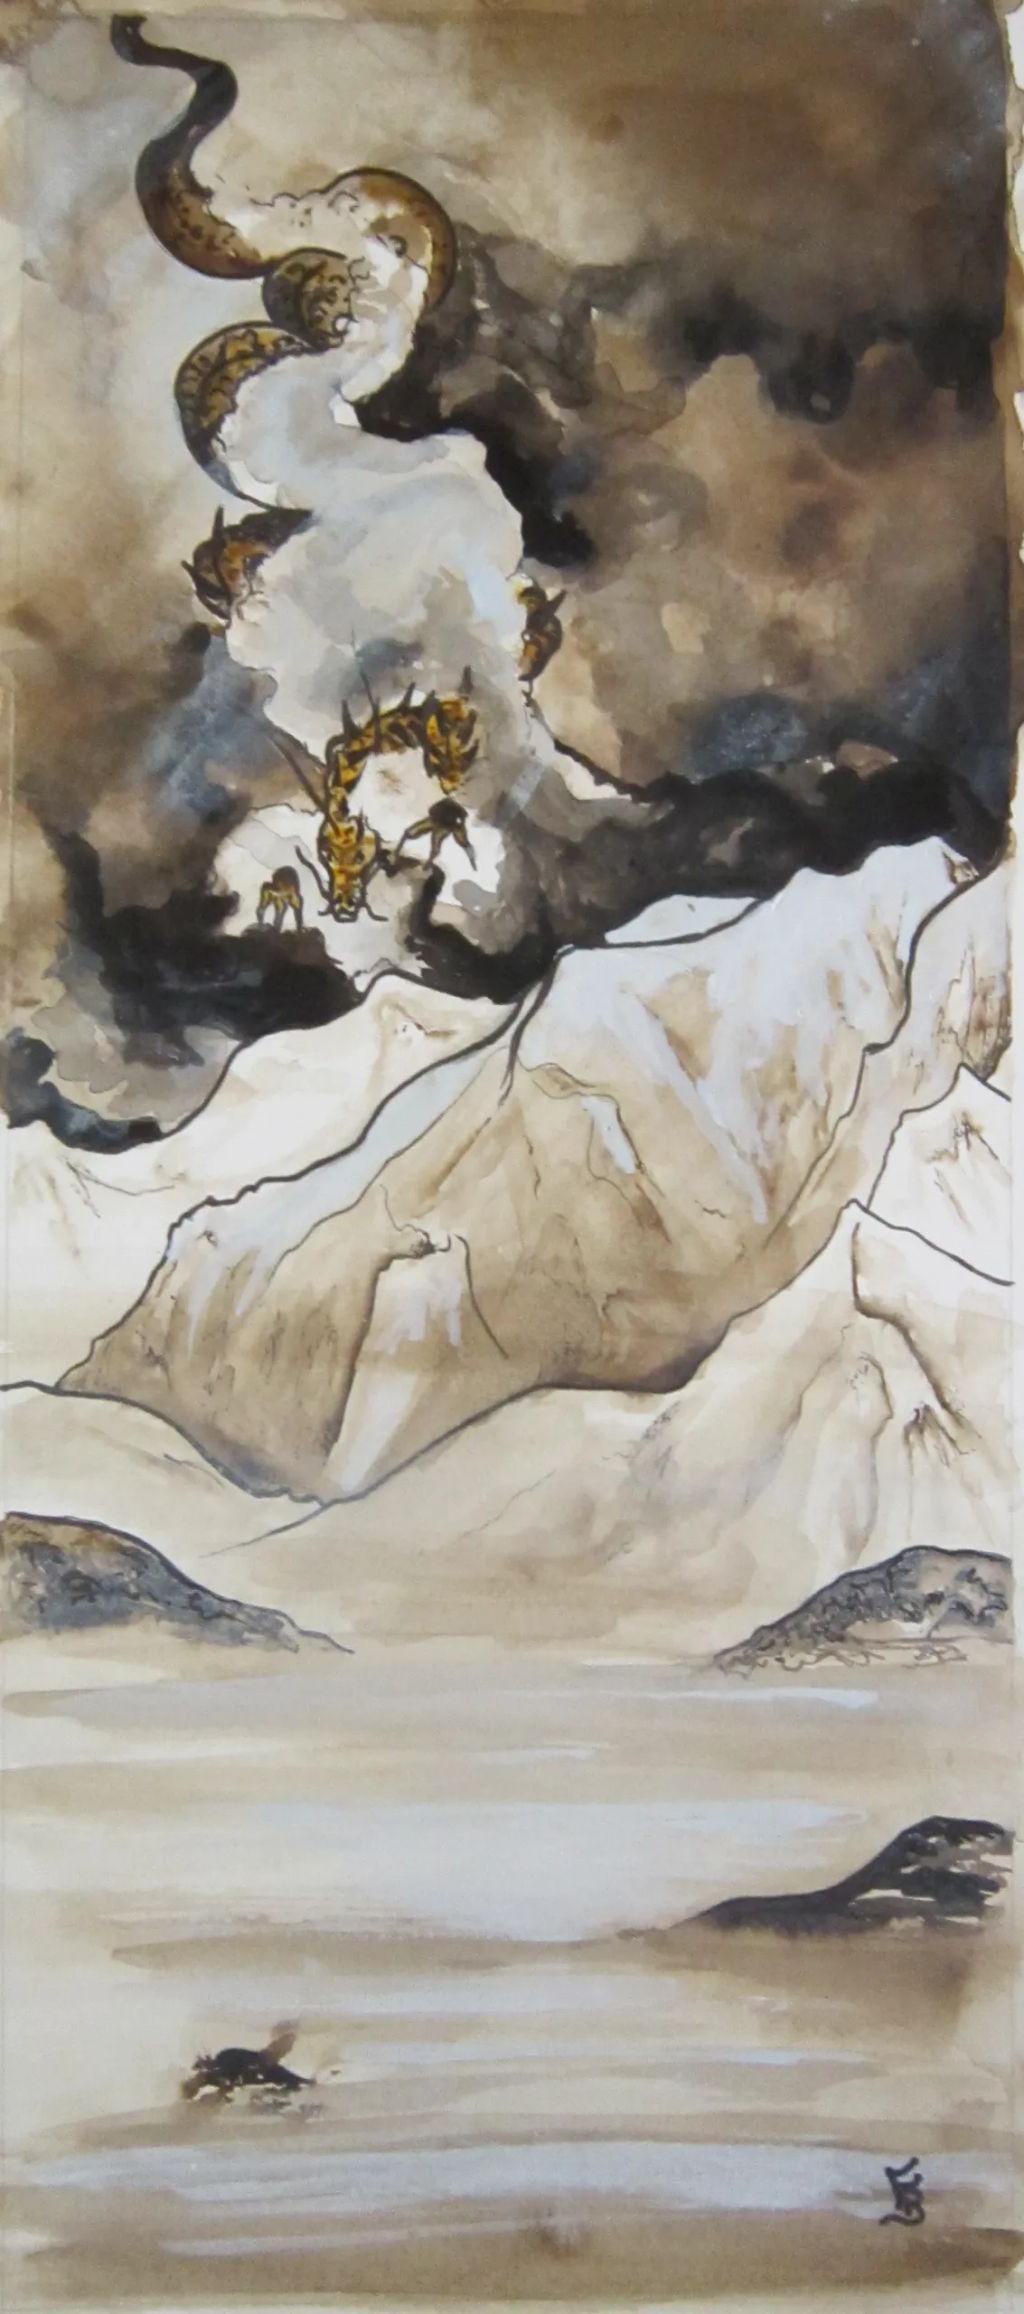 Mont blanc et dragon